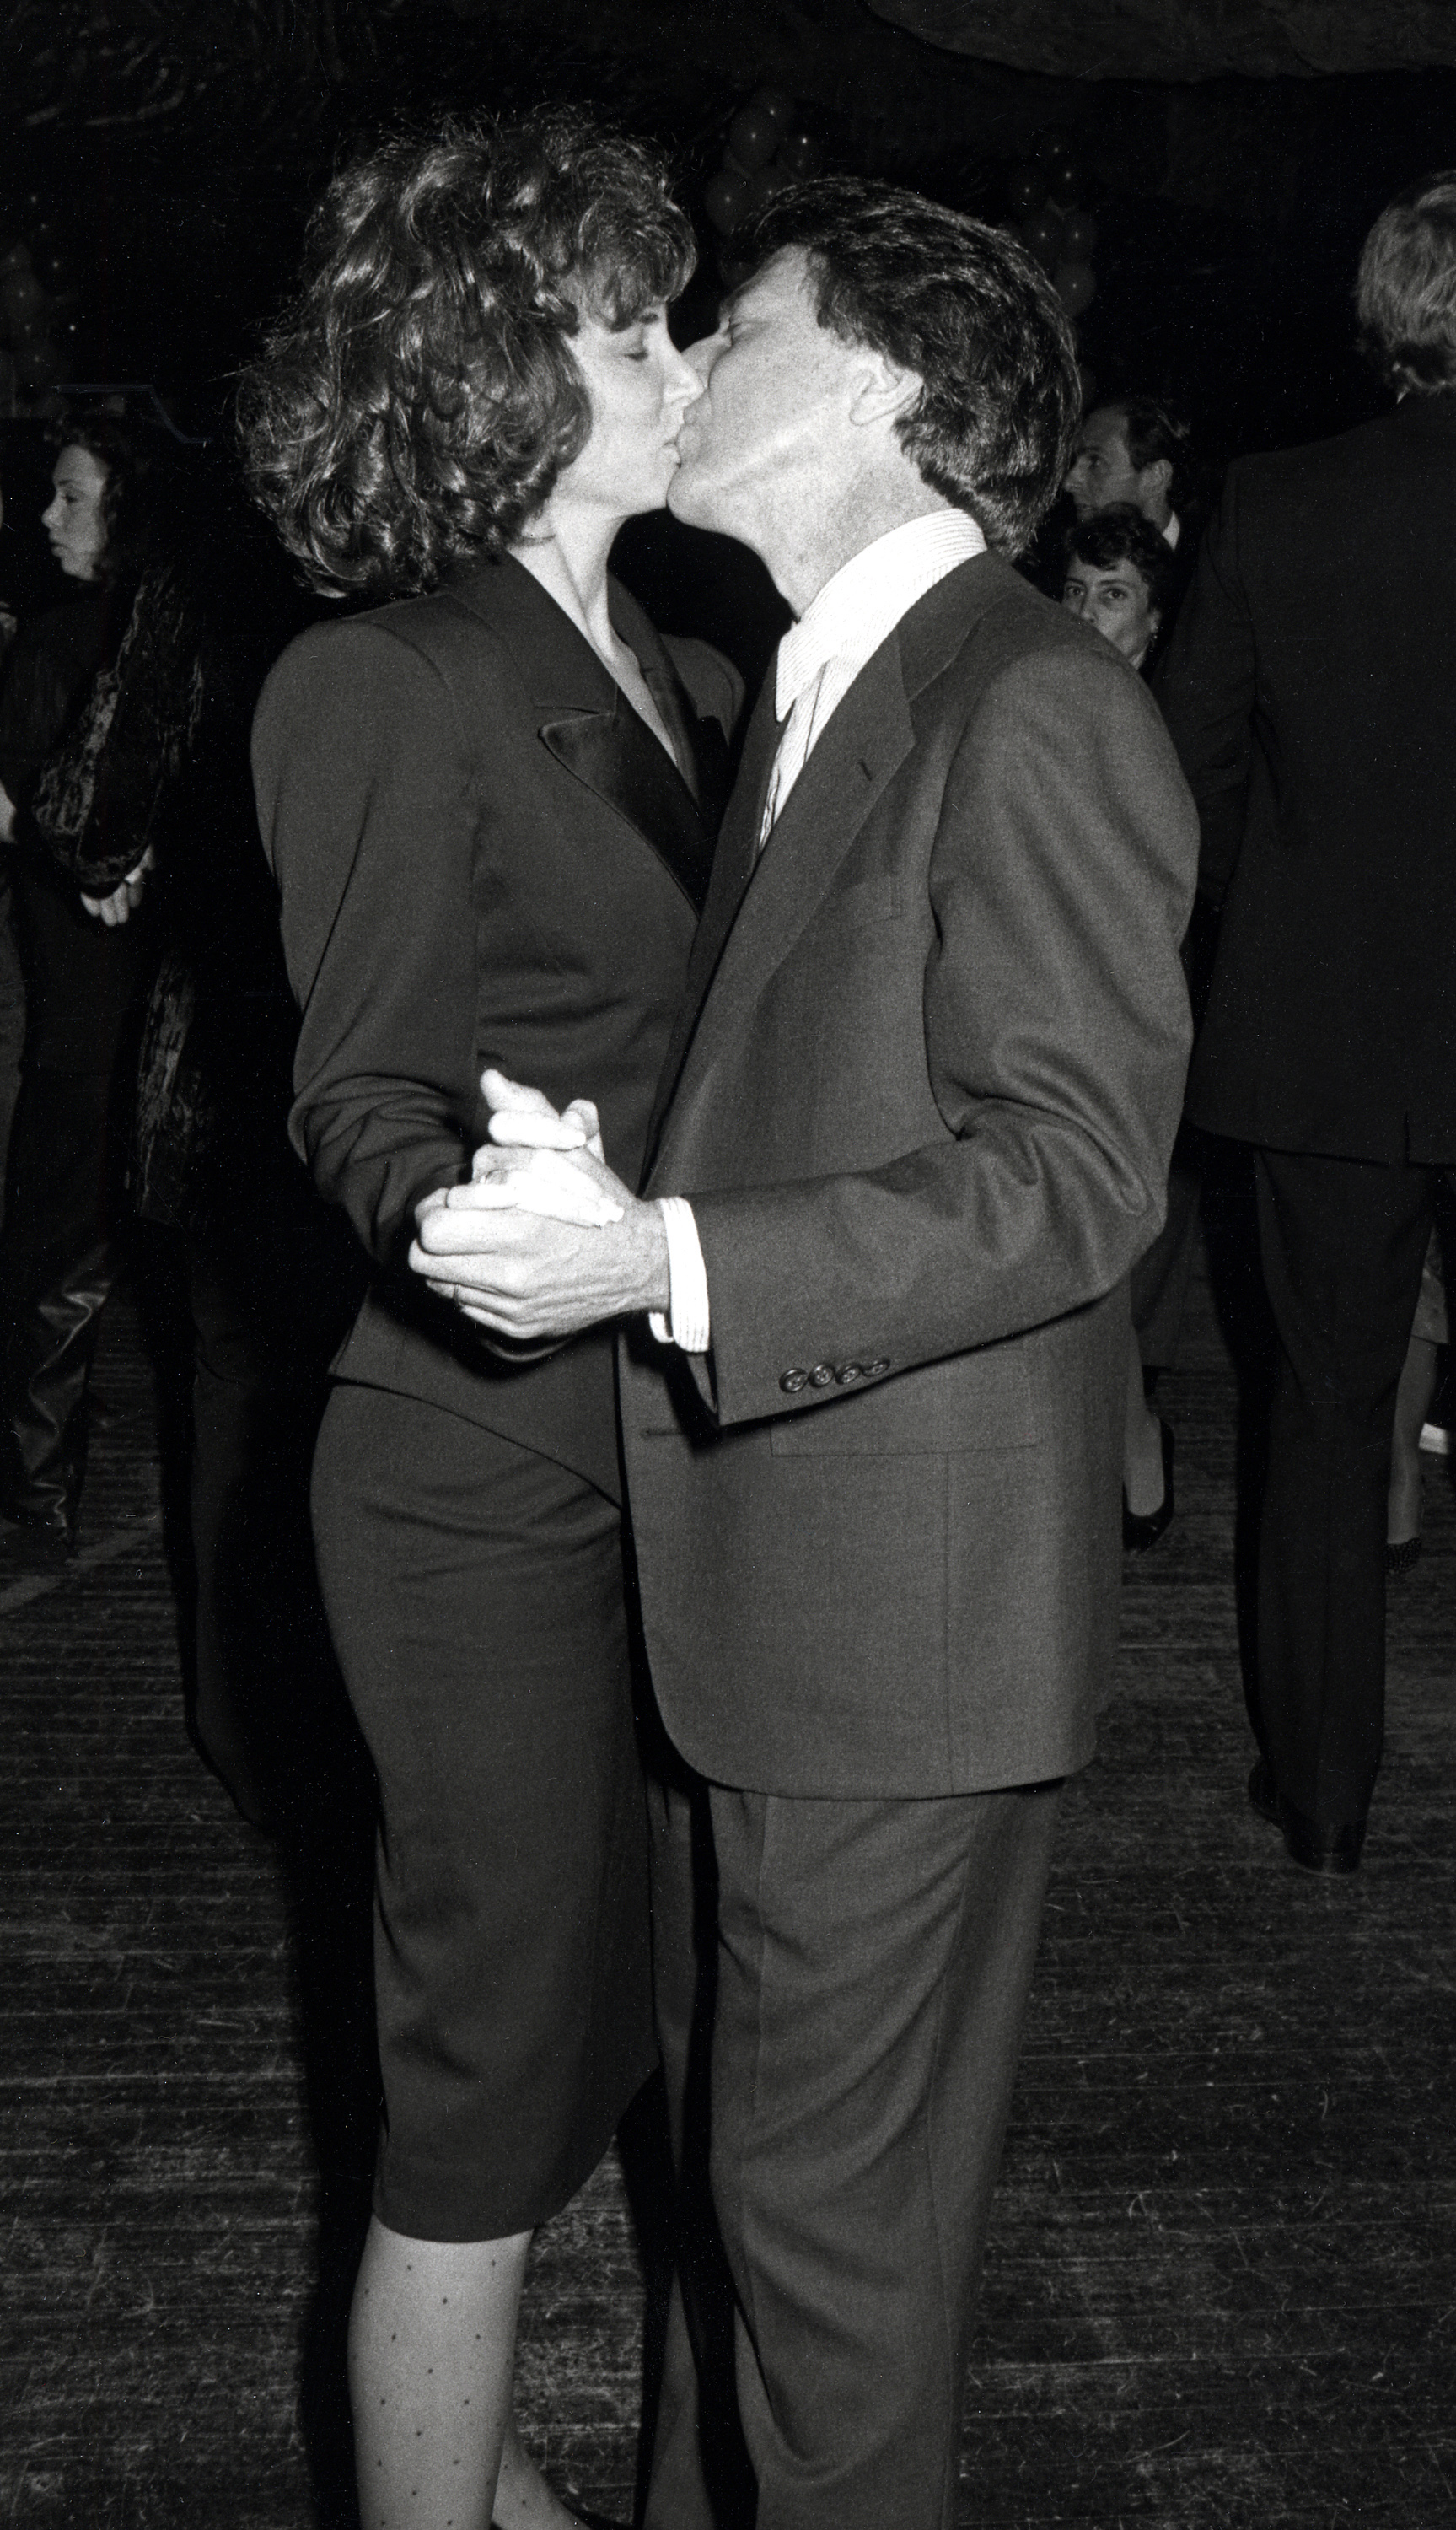 Die Frau und der Schauspieler während der Smile Party in New York City am 24. November 1986. | Quelle: Getty Images